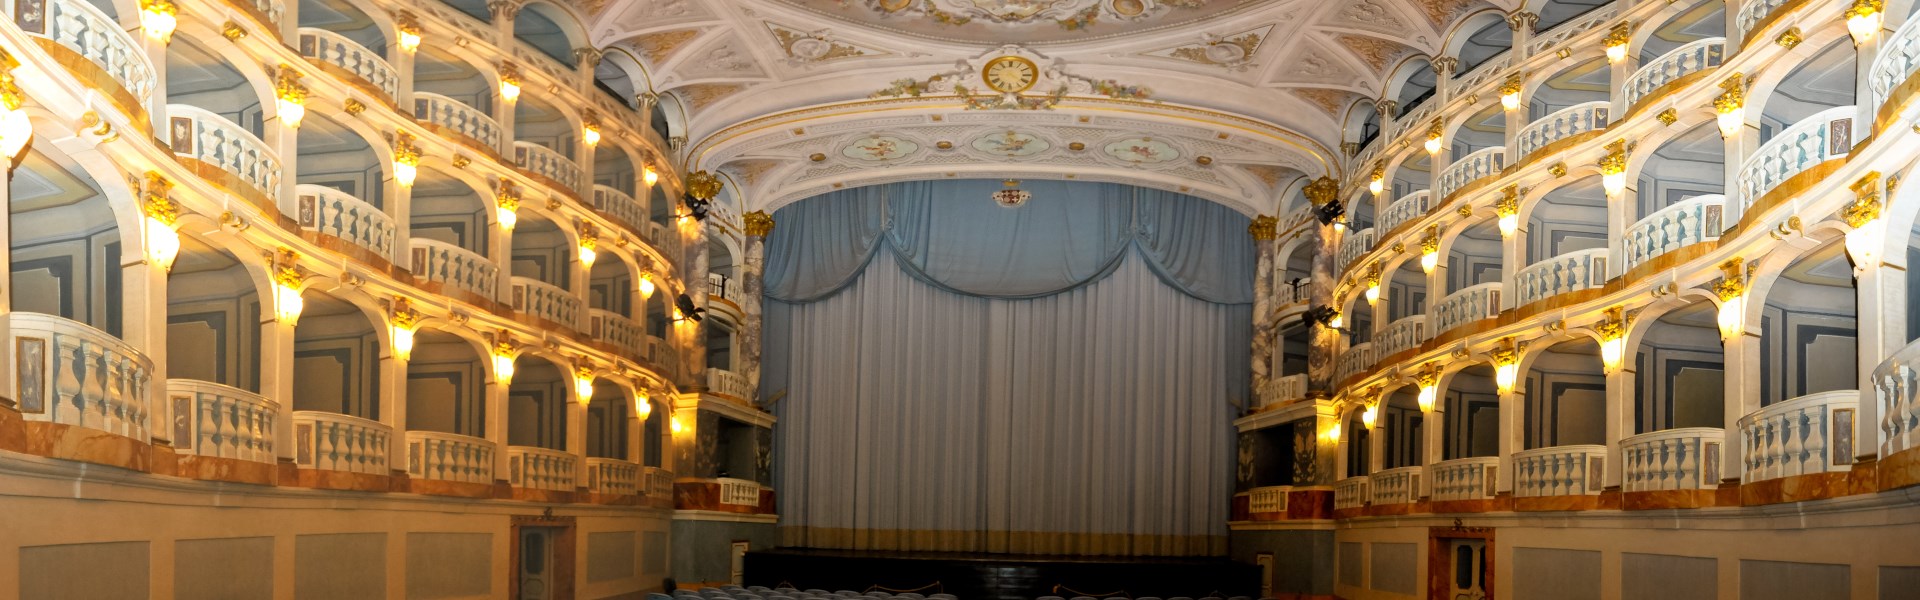 Macerata - Teatro Lauro Rossi